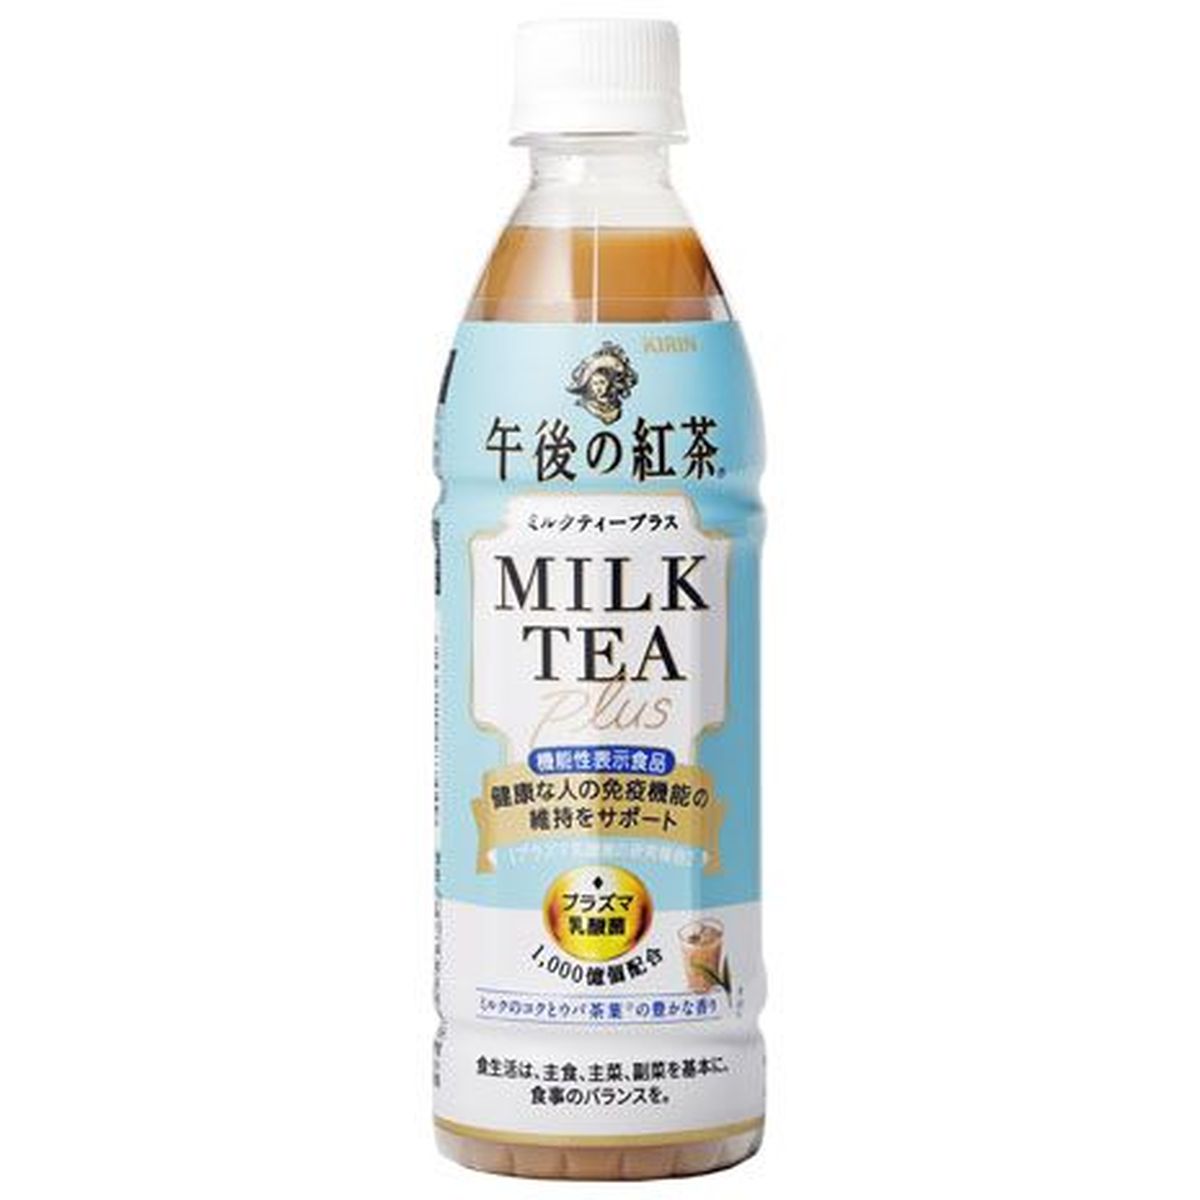 【24個入リ】キリン 午後ノ紅茶ミルクティープラス 430ml